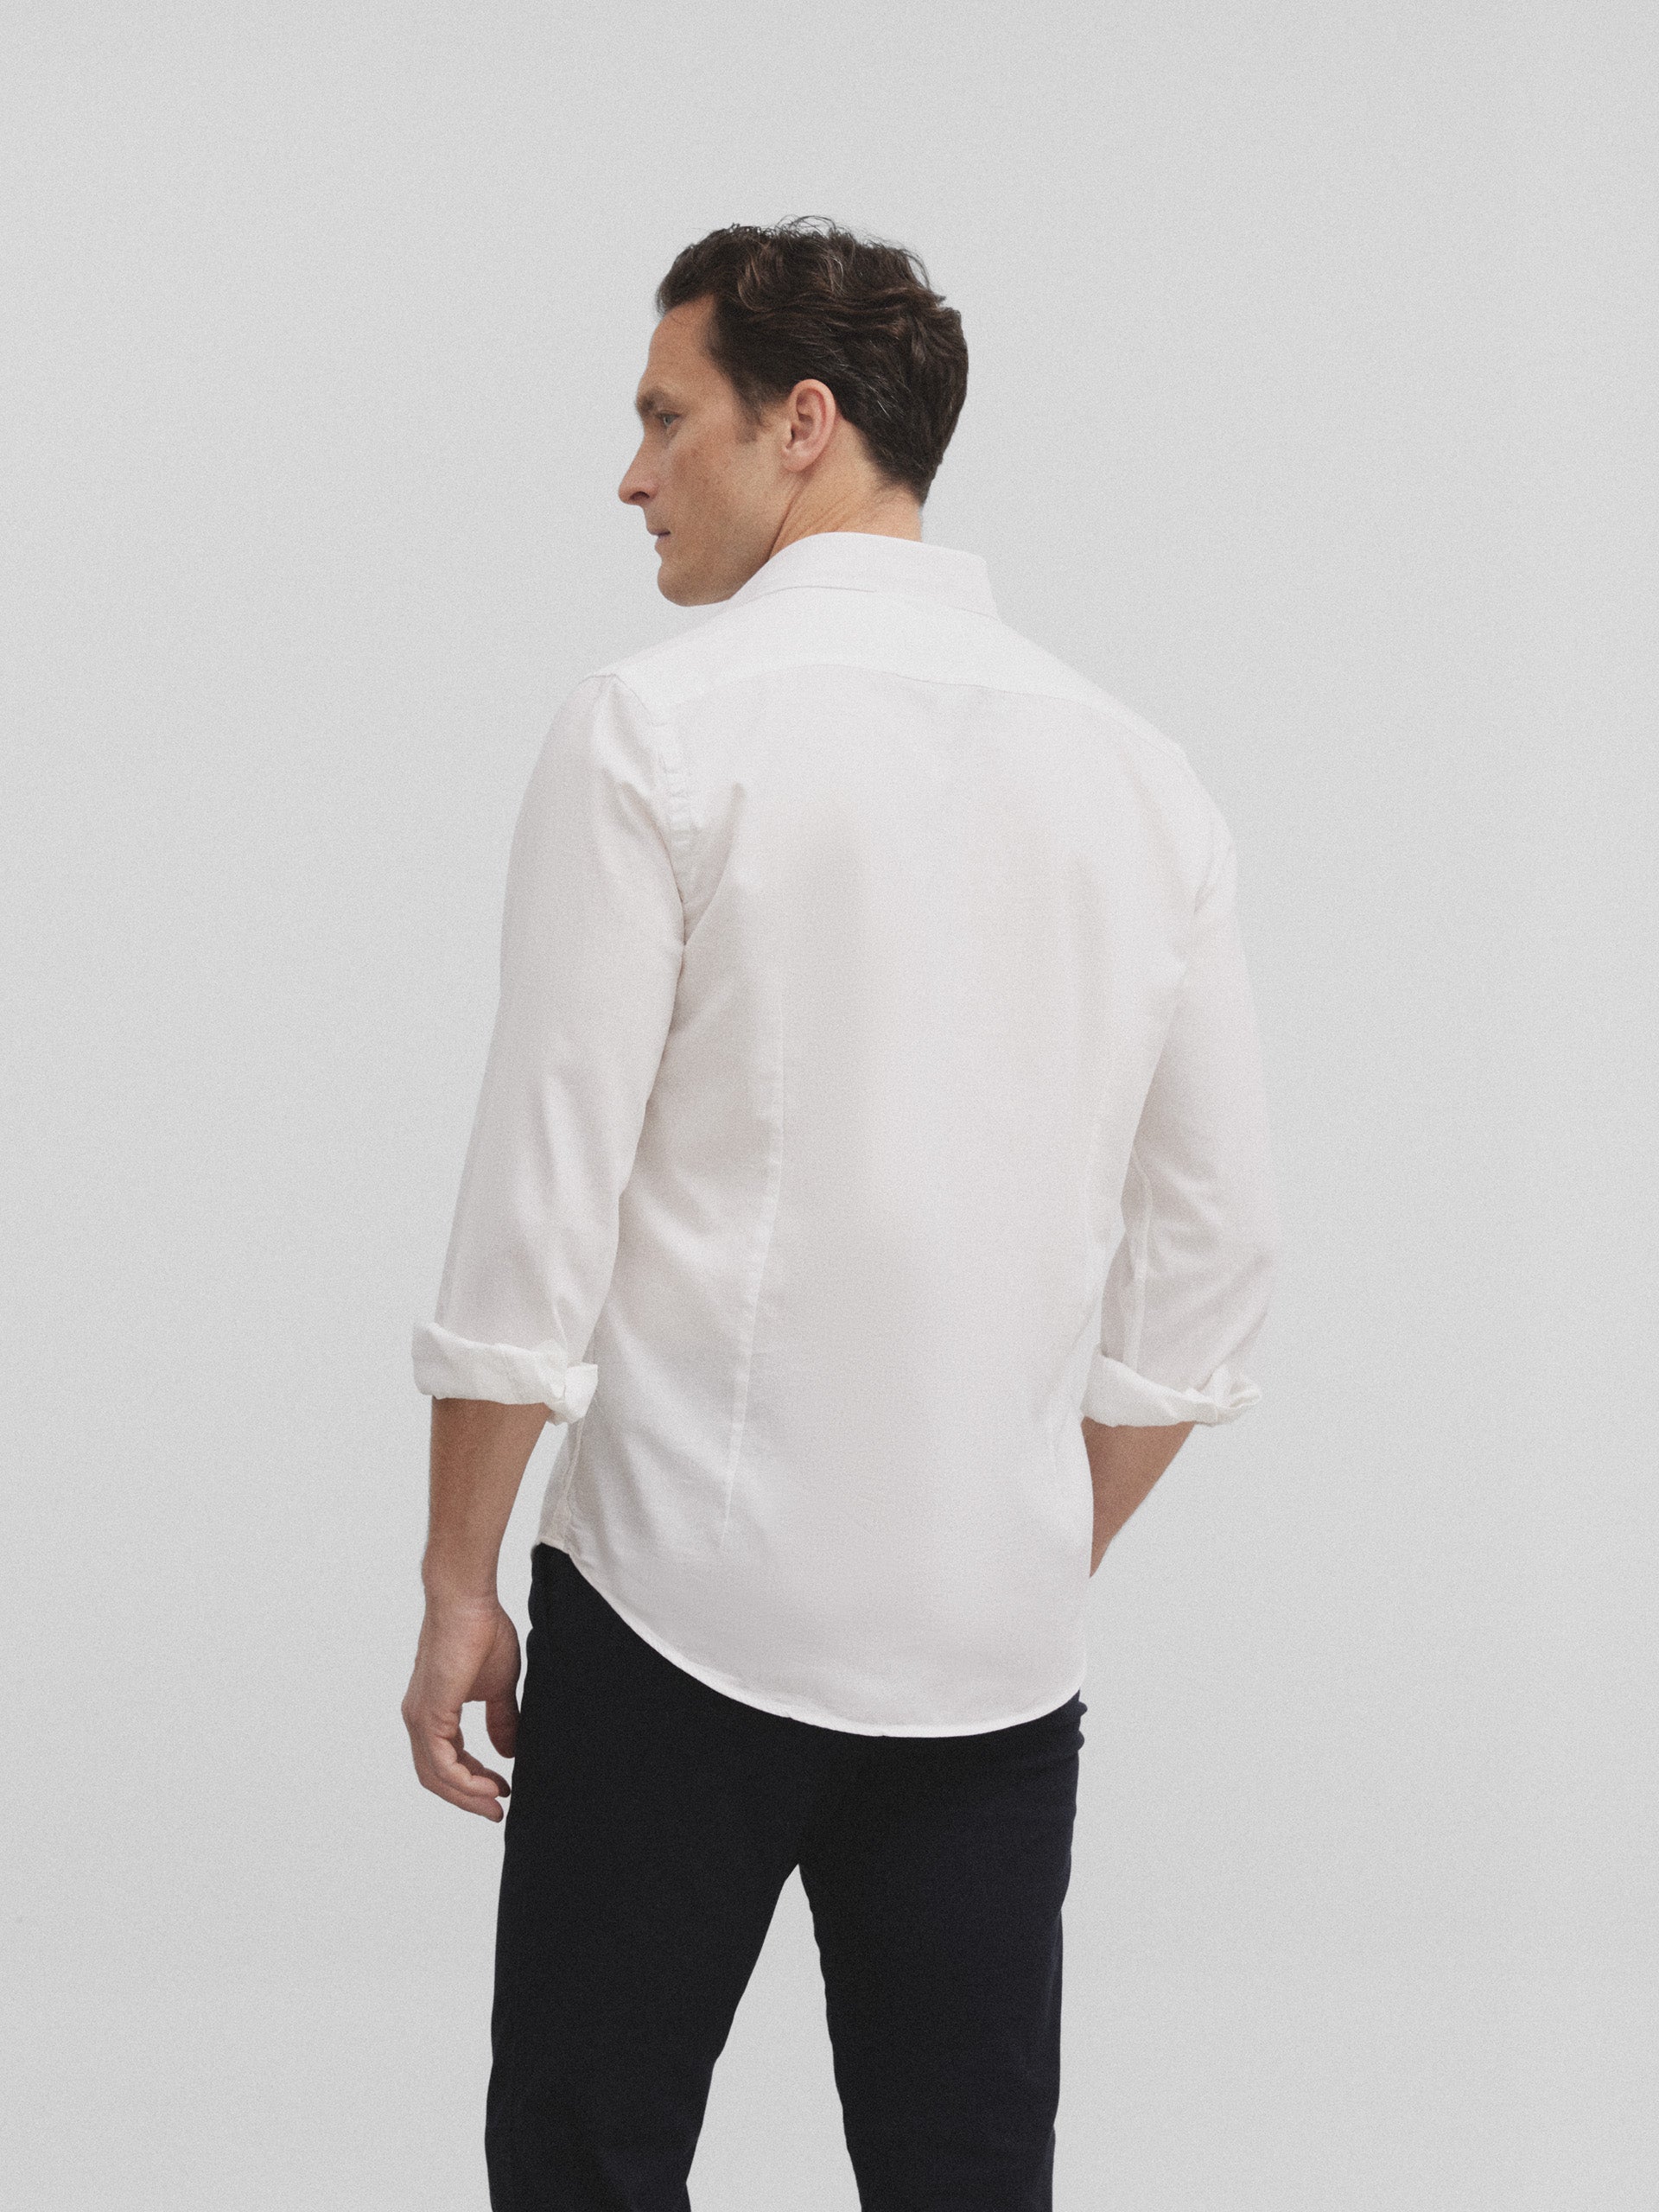 Silbon light structure white sport shirt